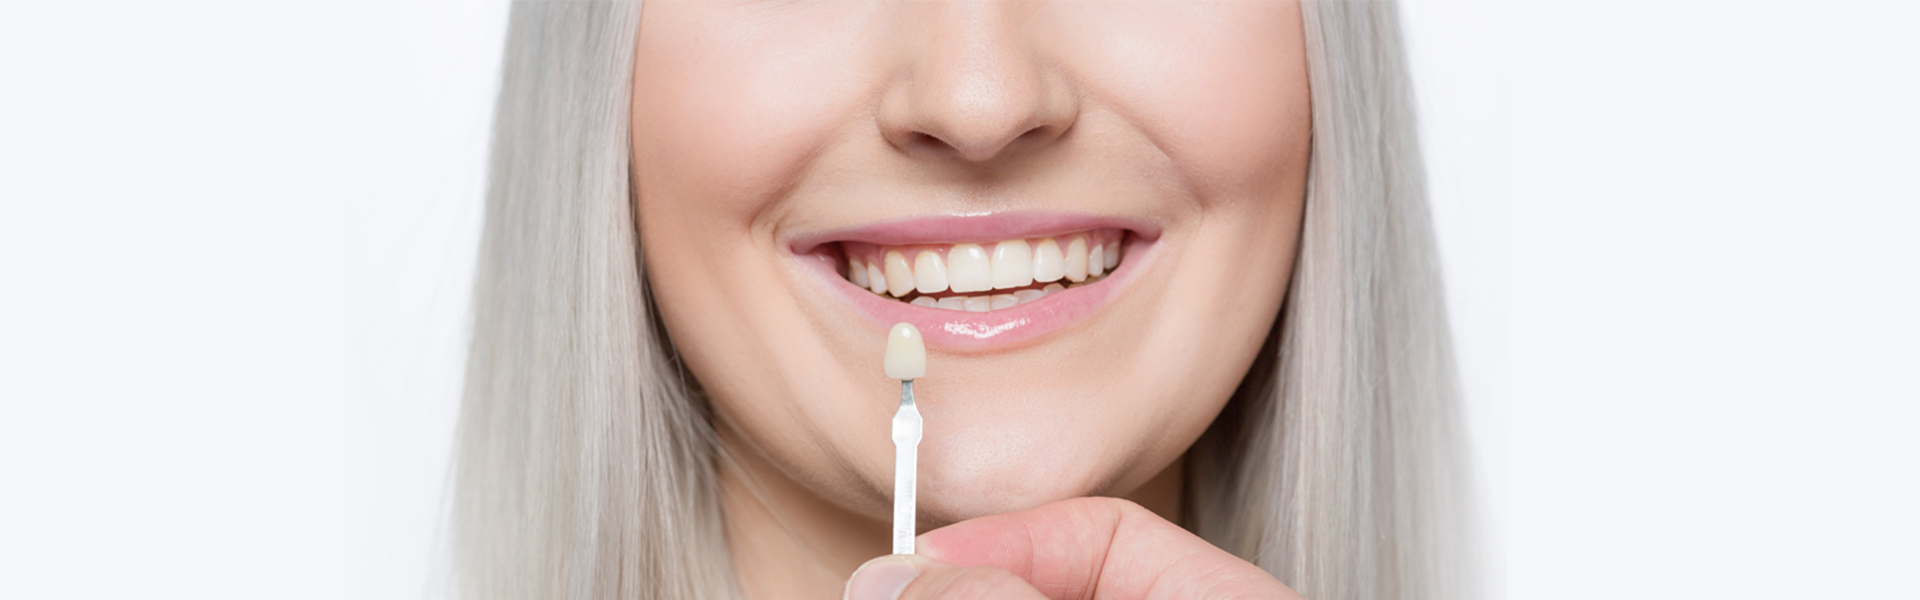 Dental Veneers: Pros and Cons